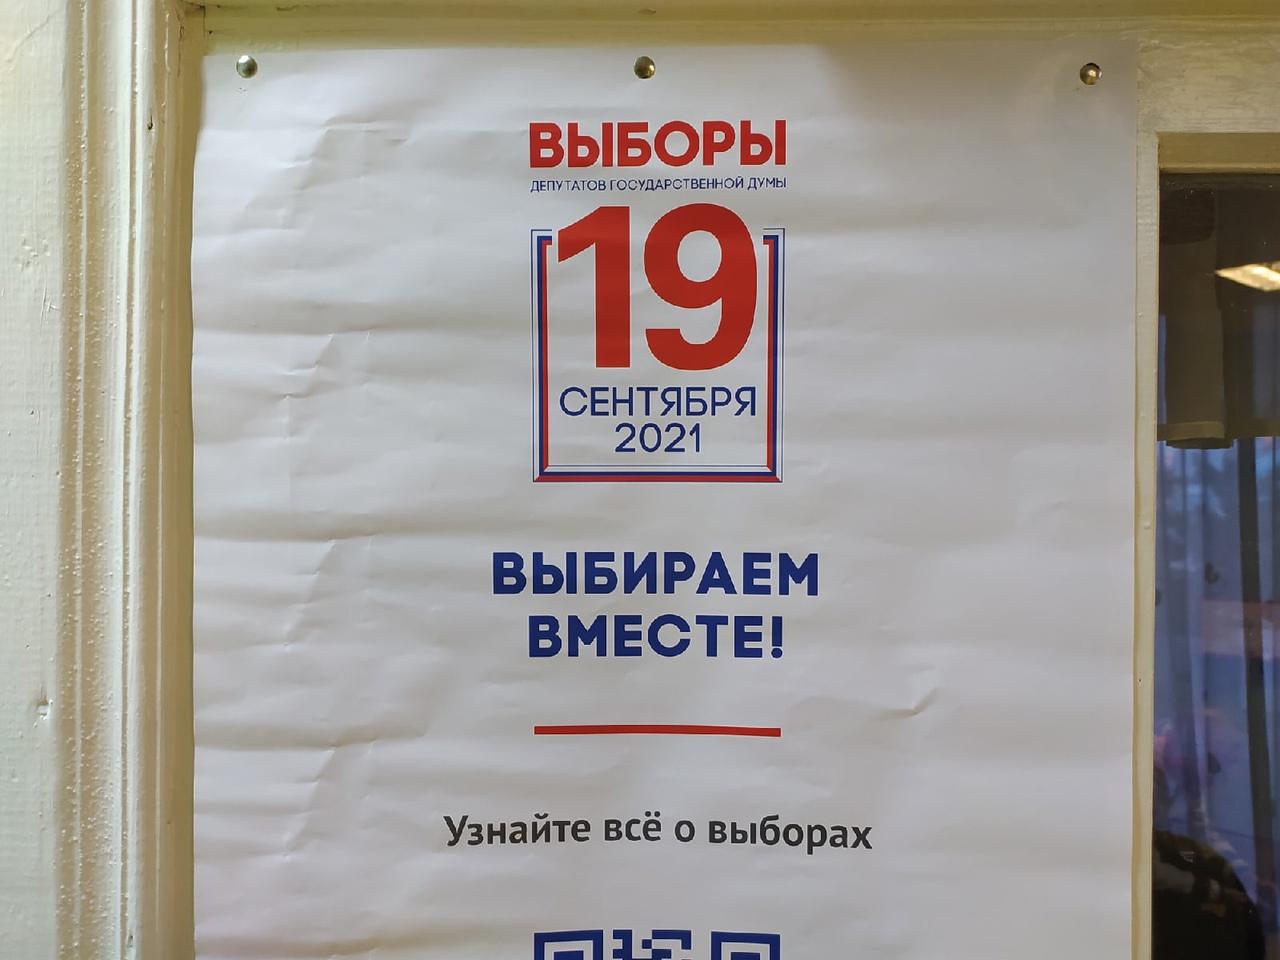 Фото Кого выбираем 19 сентября 2021 года – полный список кандидатов в депутаты Госдумы РФ в Новосибирской области 2